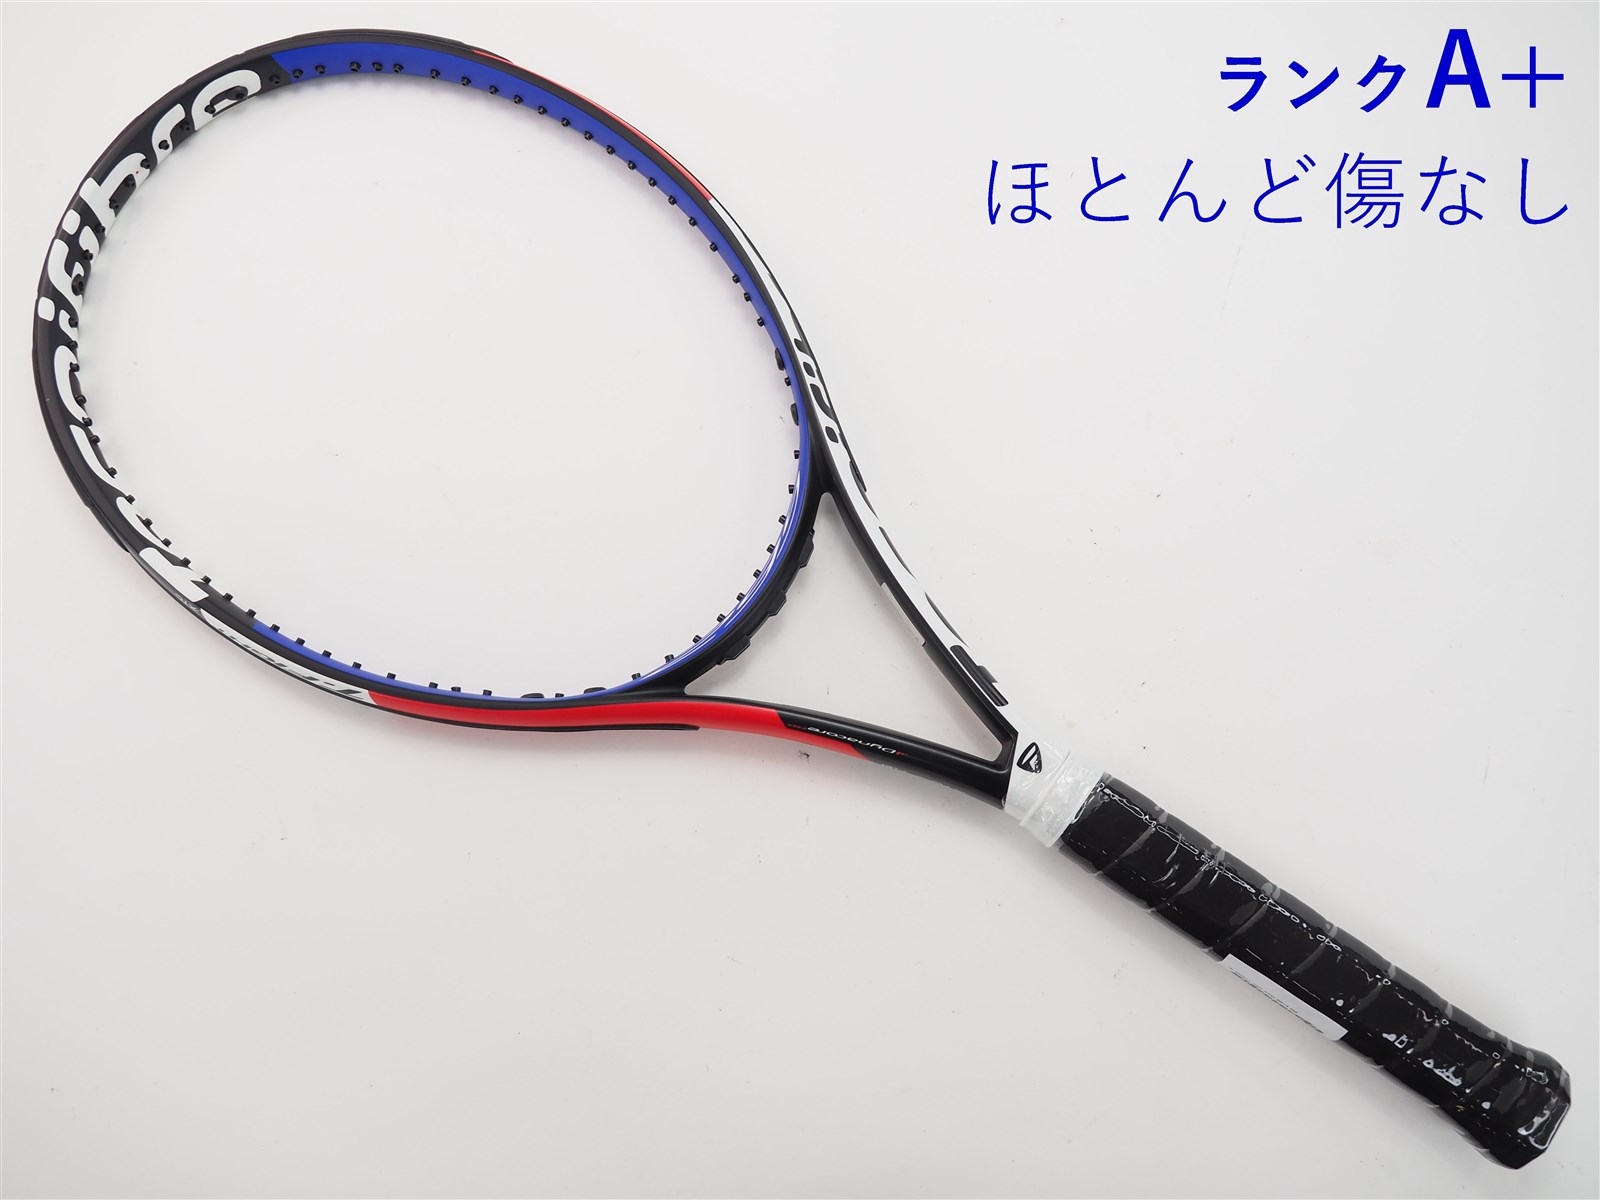 テニスラケット テクニファイバー ティーファイト 315 XTC 2018年